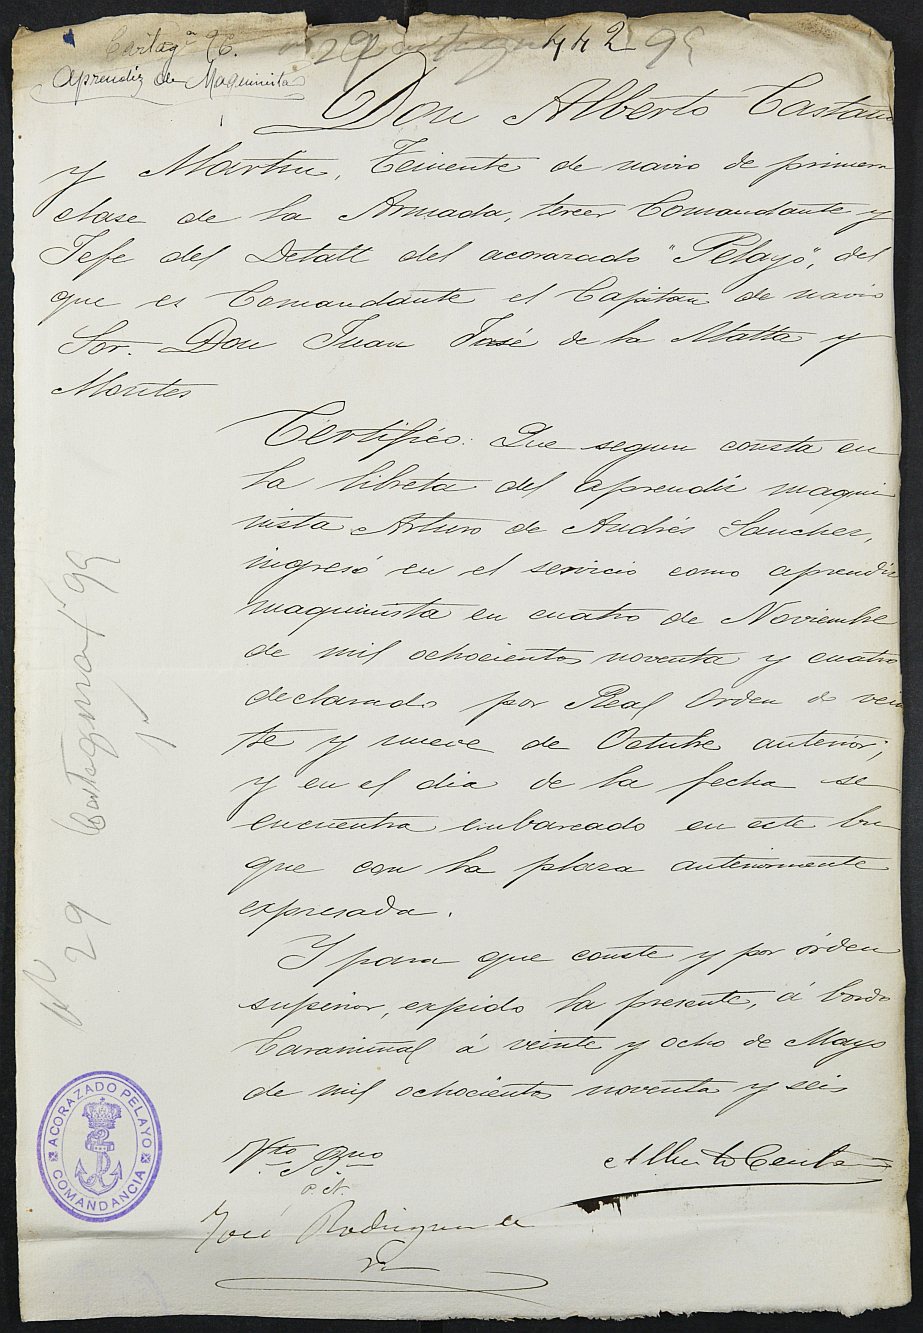 Certificado de servicio como voluntario en el Ejército de Arturo de Andrés Sánchez, mozo del reemplazo de 1895 de Cartagena.